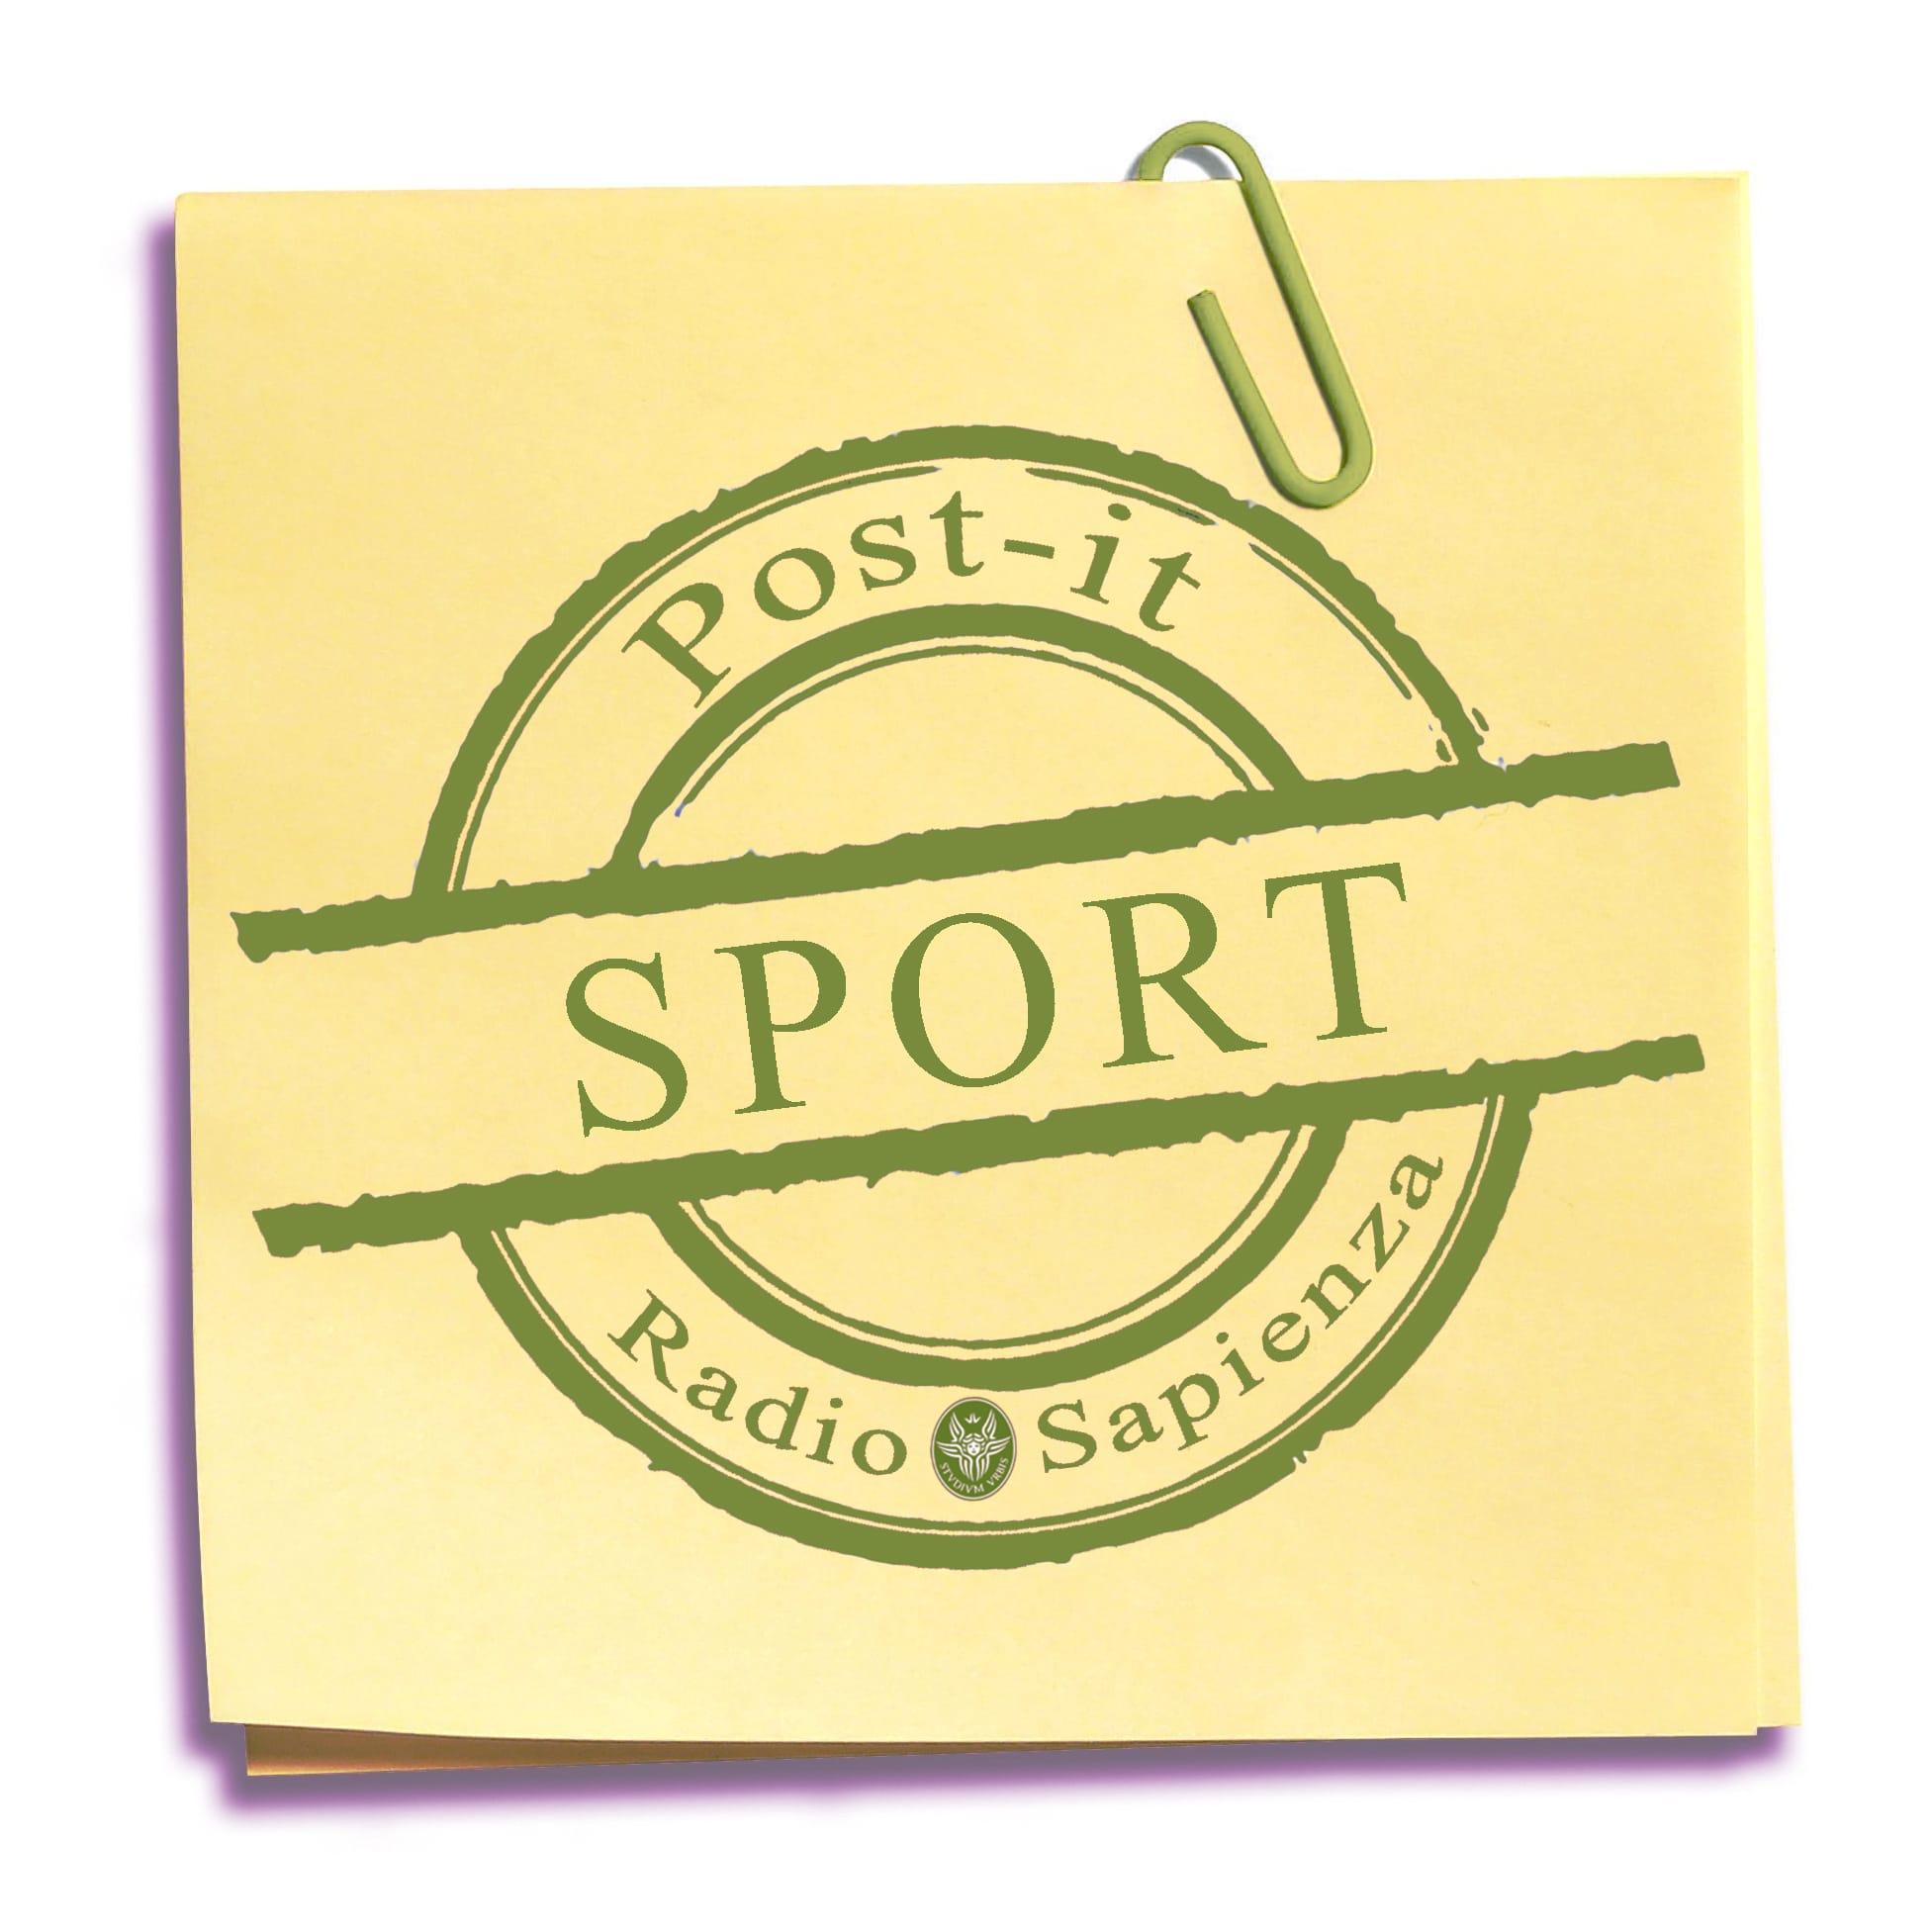 Post-it Sport – Venerdì 26 novembre